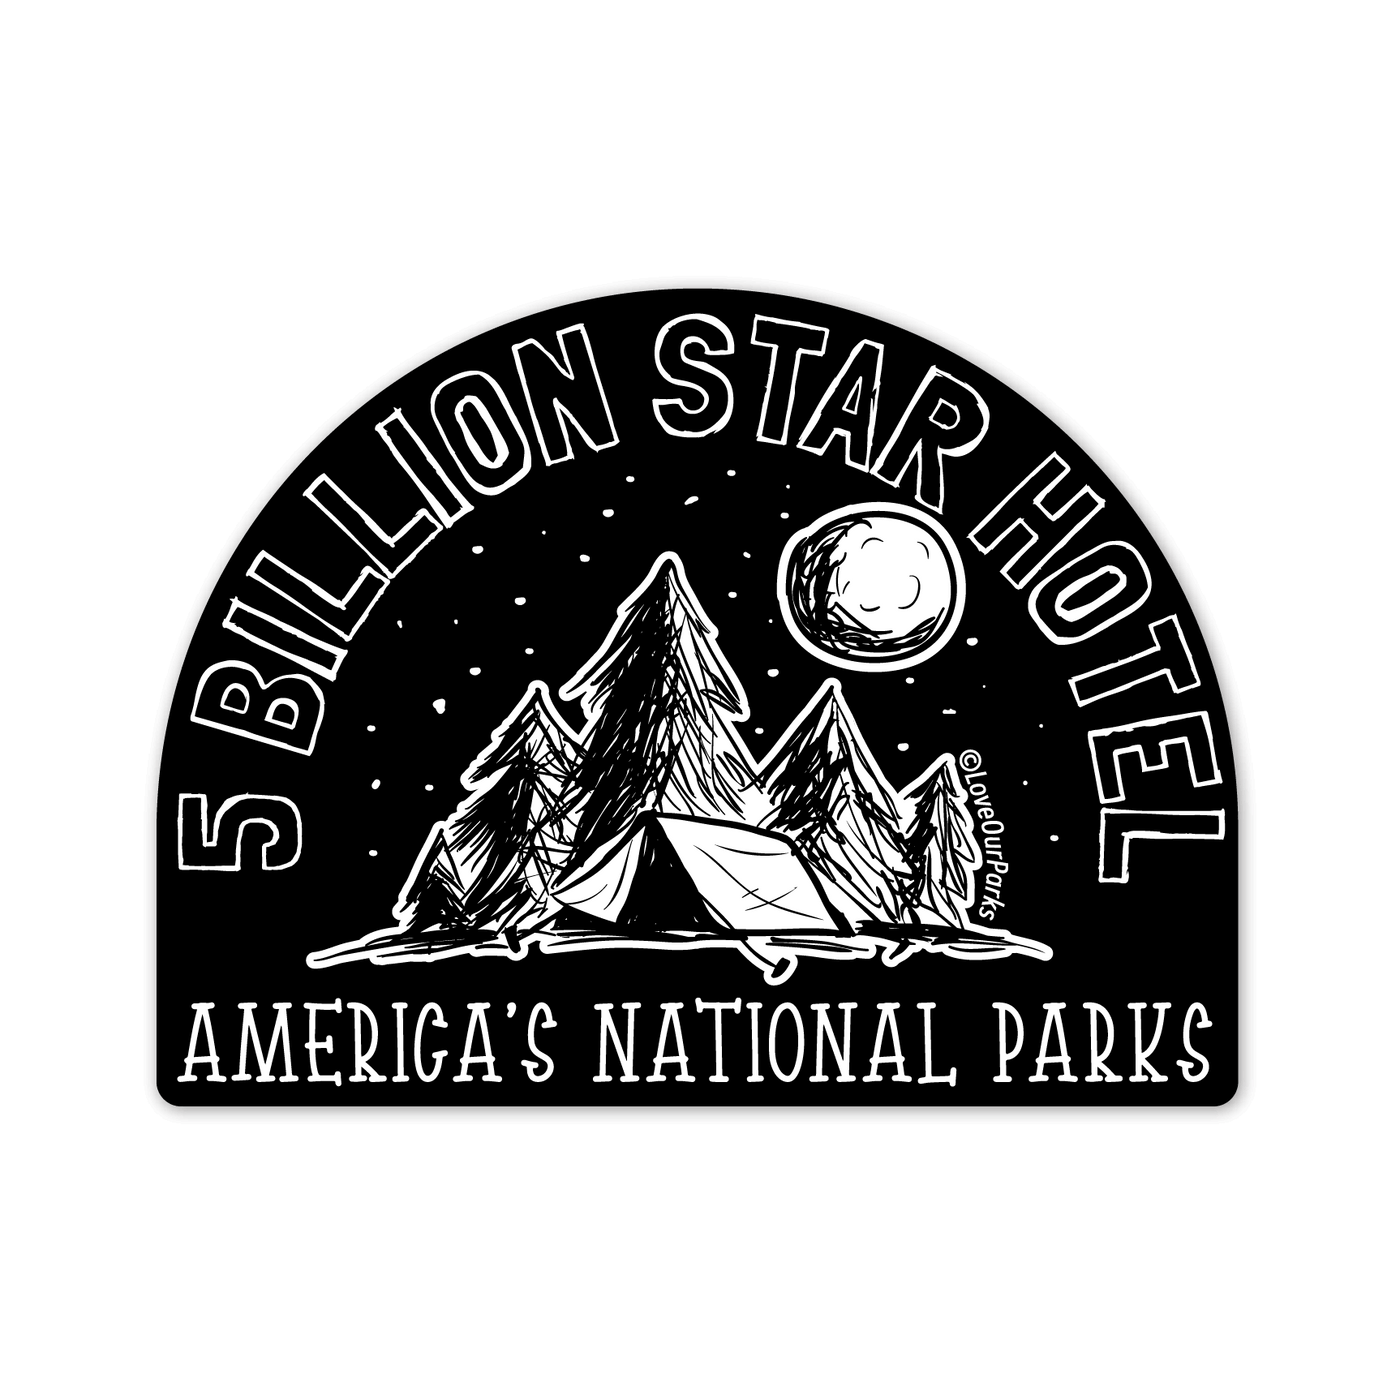 Five Billion Star Hotel Sticker